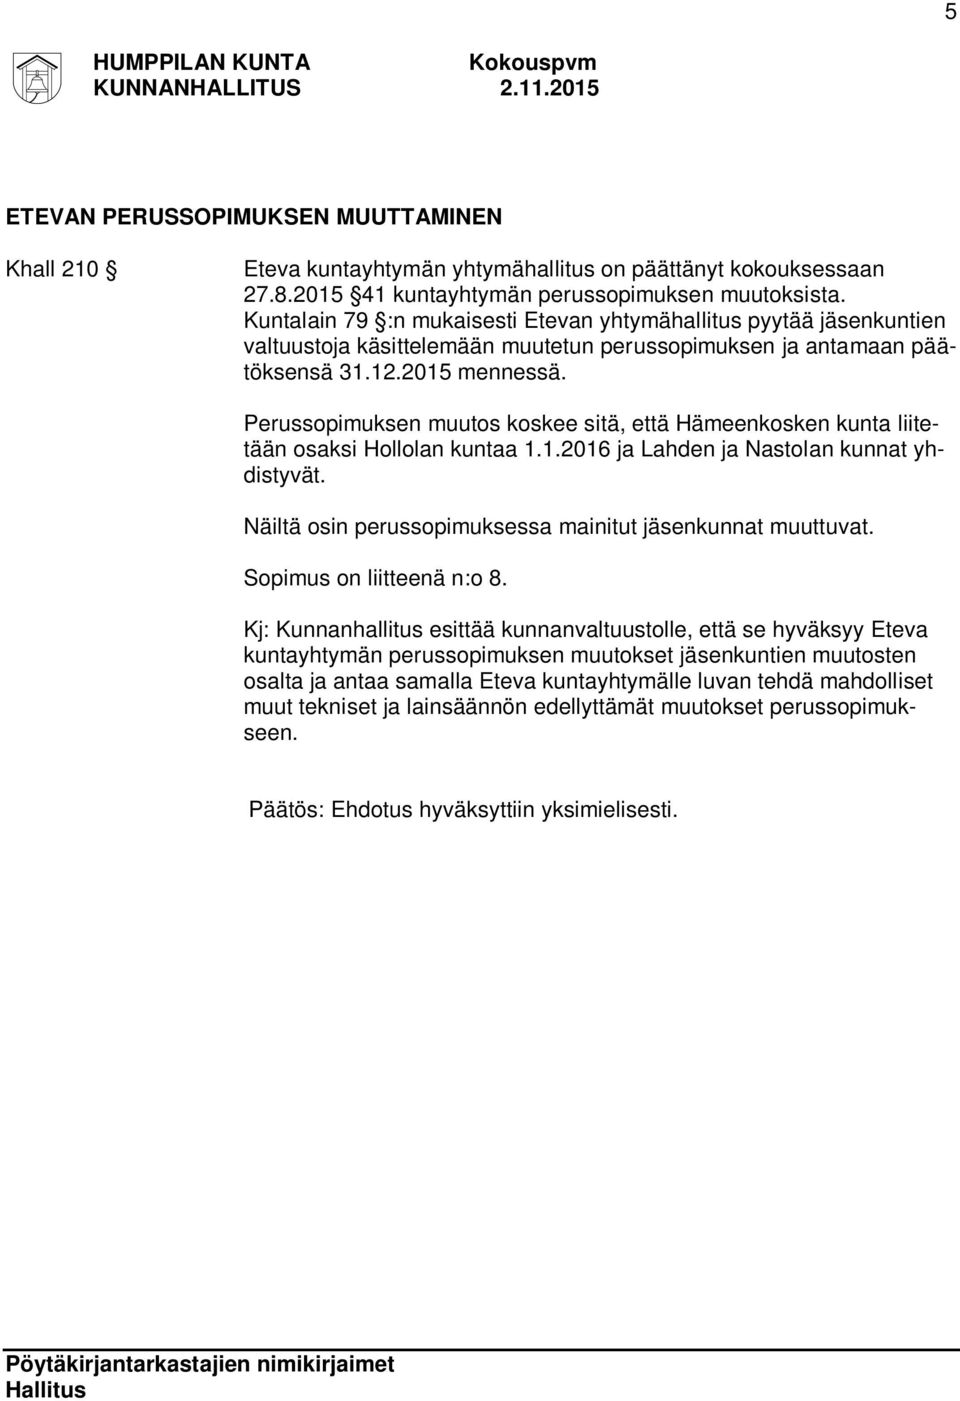 Perussopimuksen muutos koskee sitä, että Hämeenkosken kunta liitetään osaksi Hollolan kuntaa 1.1.2016 ja Lahden ja Nastolan kunnat yhdistyvät.